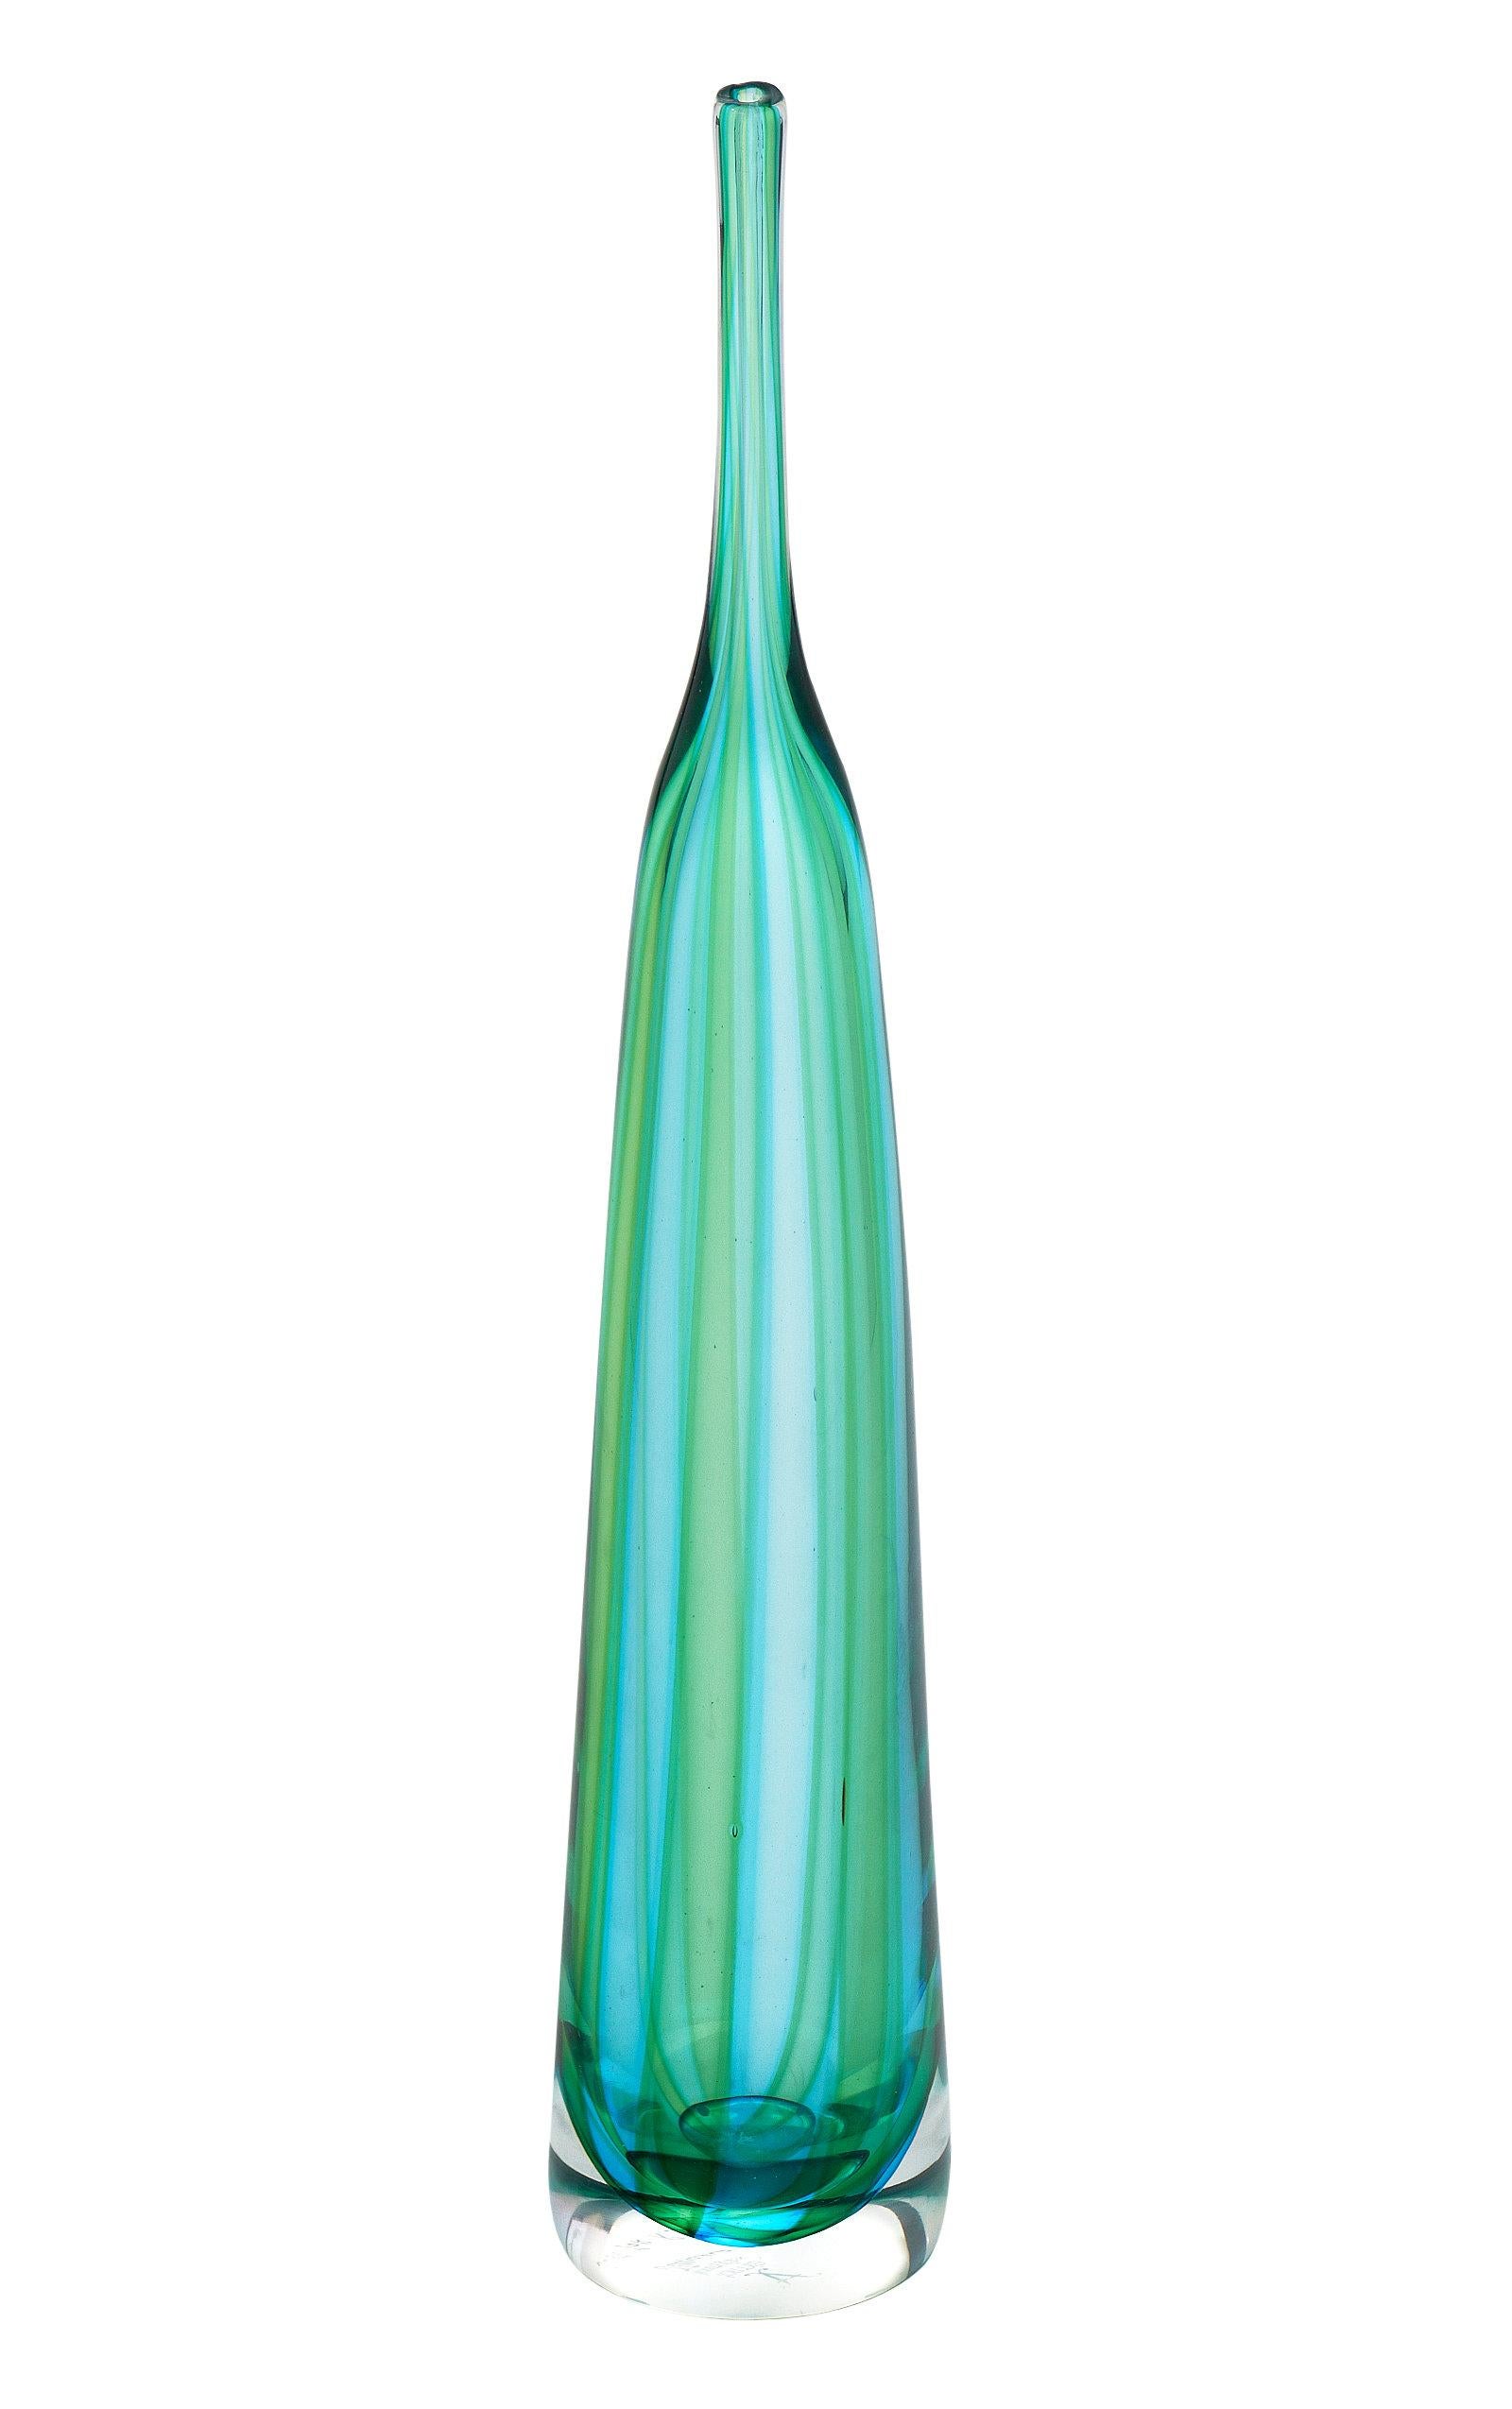 Paire de vases en verre de Murano soufflé à la main. Cette paire dynamique de récipients de Murano combine des nuances tourbillonnantes de verre aqua et vert. Nous aimons les formes et les détails magnifiques et uniques.

Les mesures indiquées sont